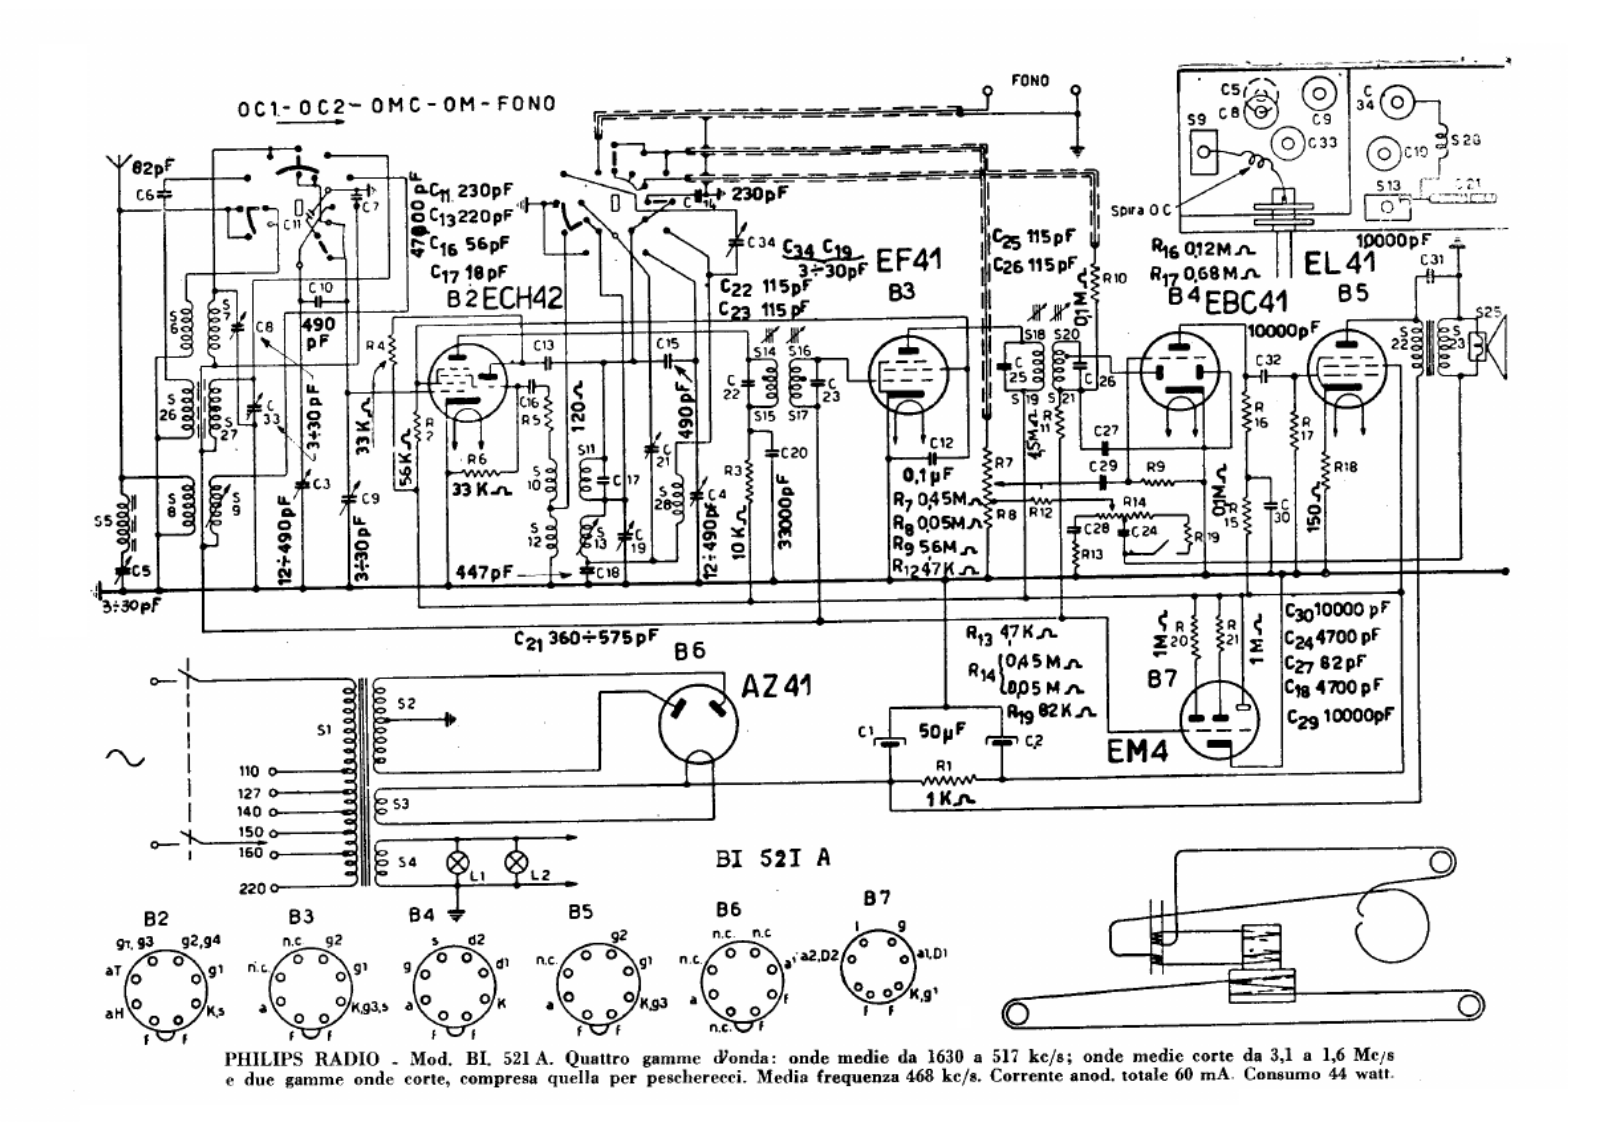 Philips bi521a schematic